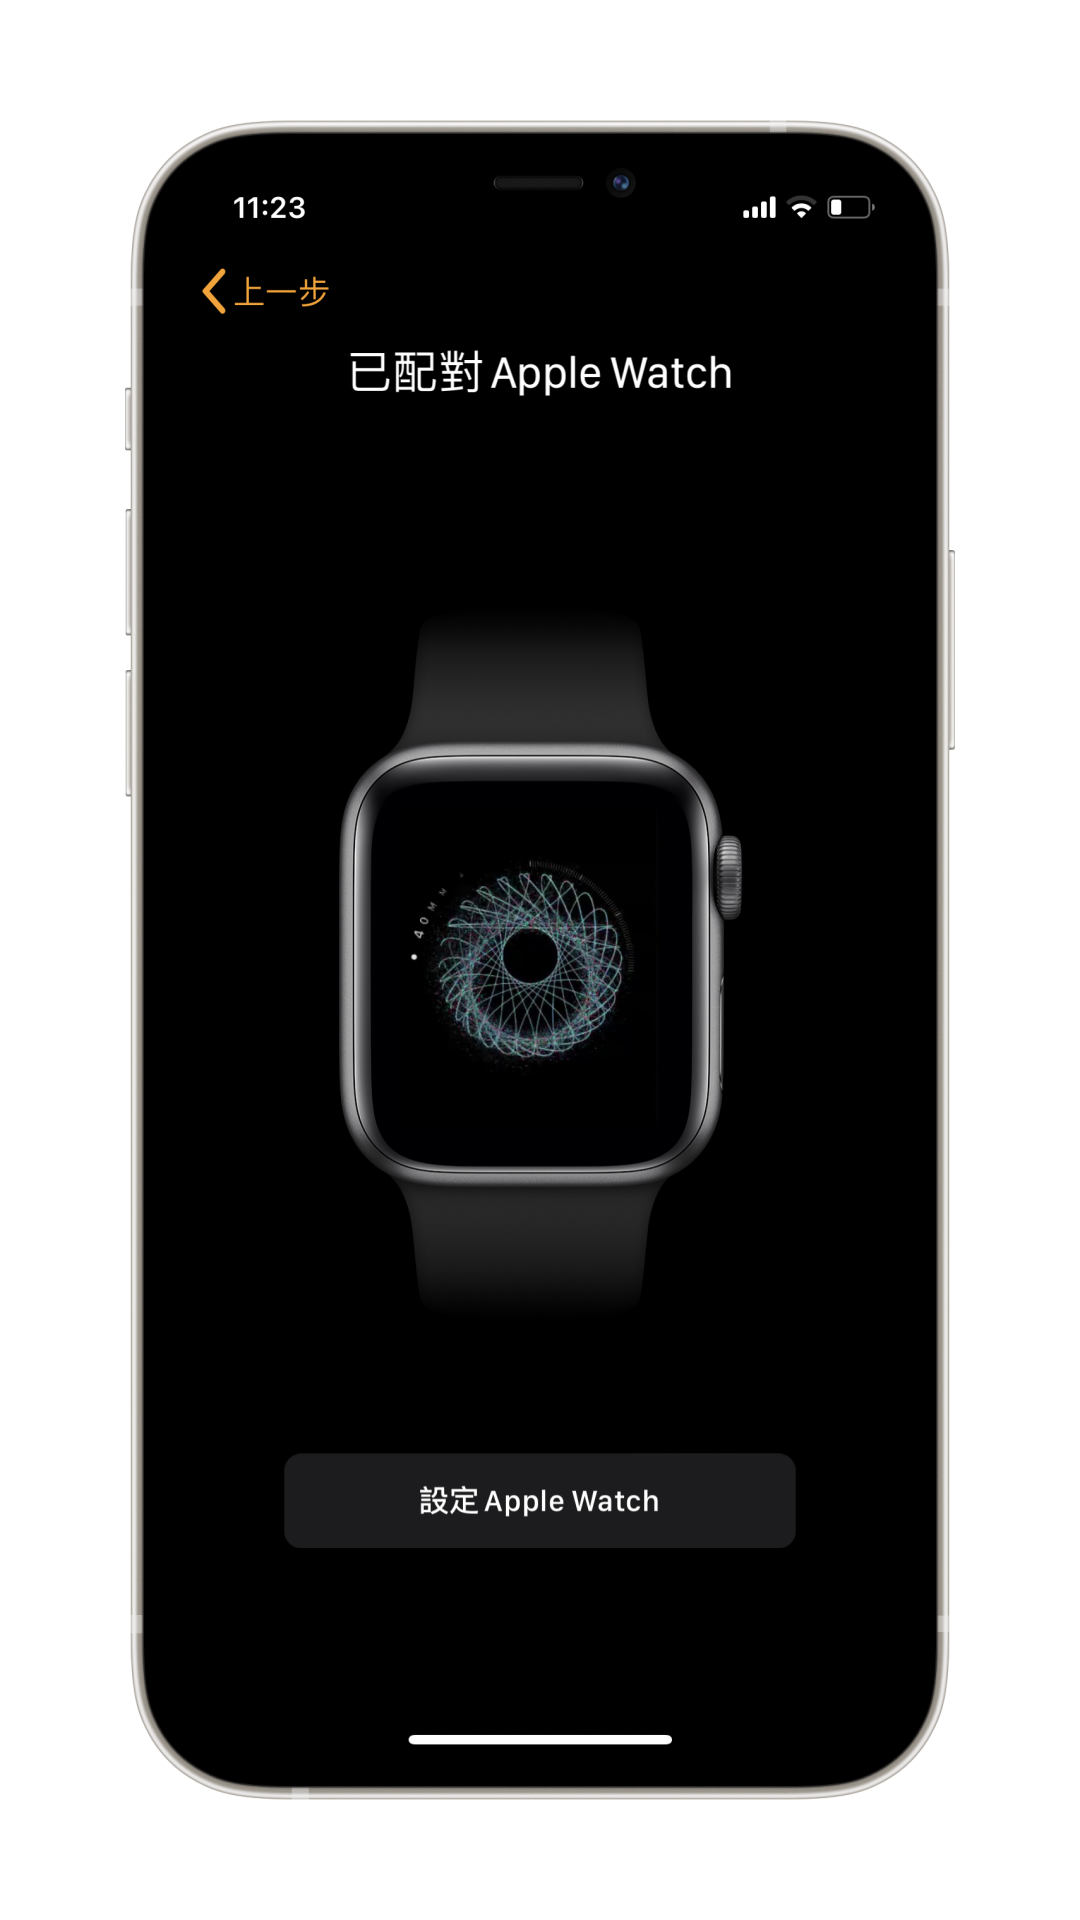 新到手的 Apple Watch 应该怎么进行开机和配对